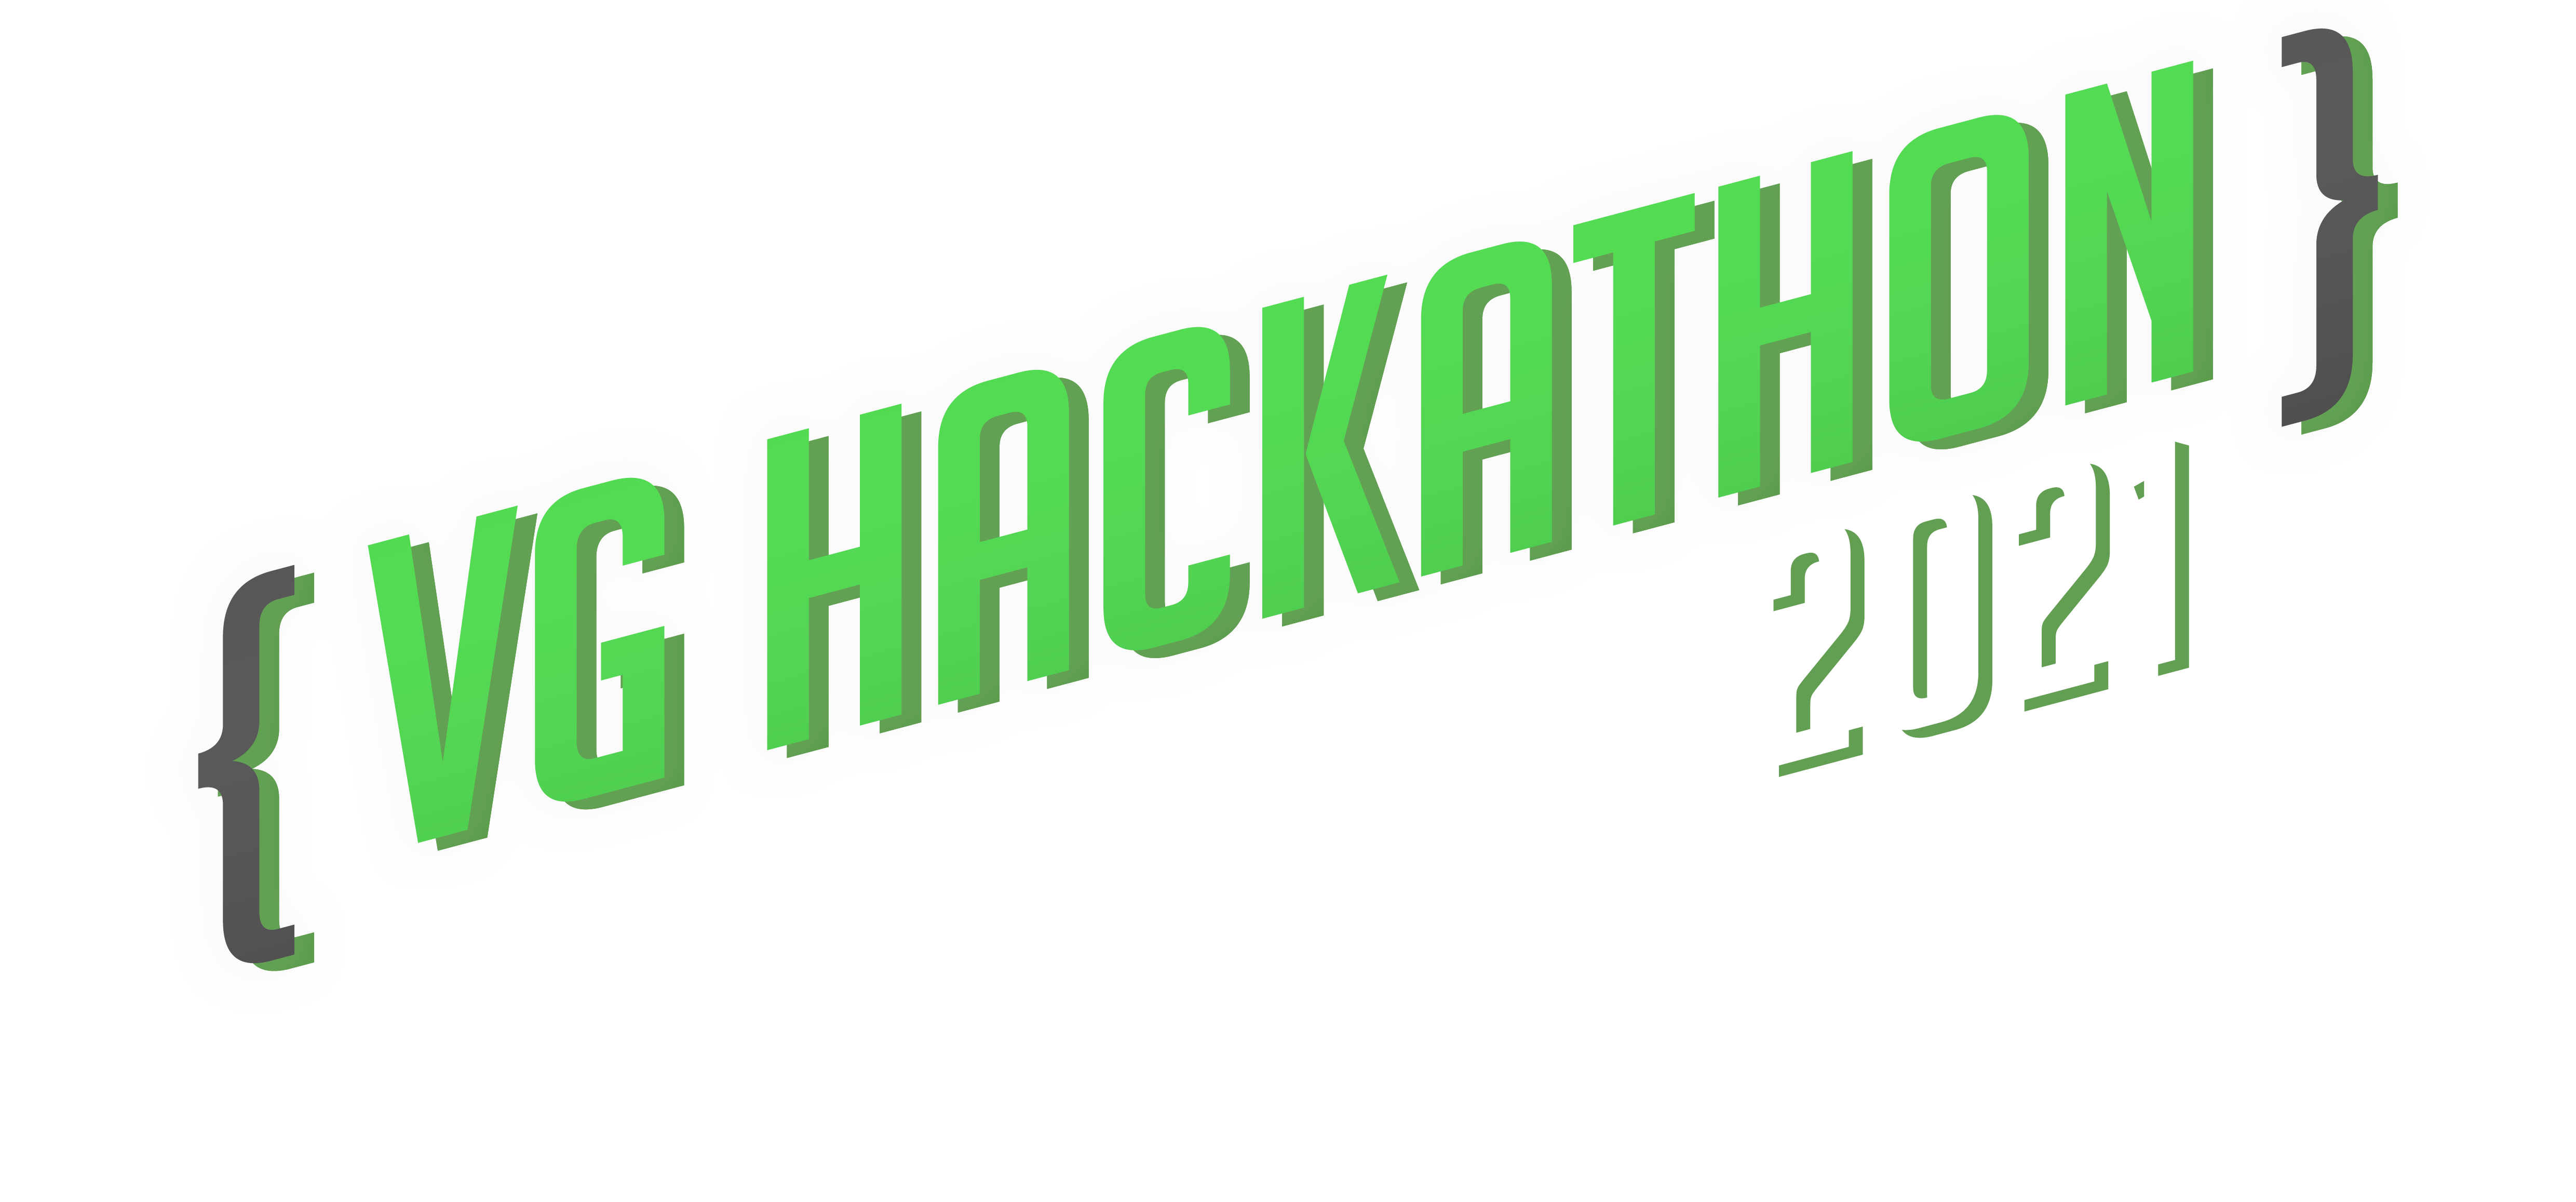 VG Hackathon 2021